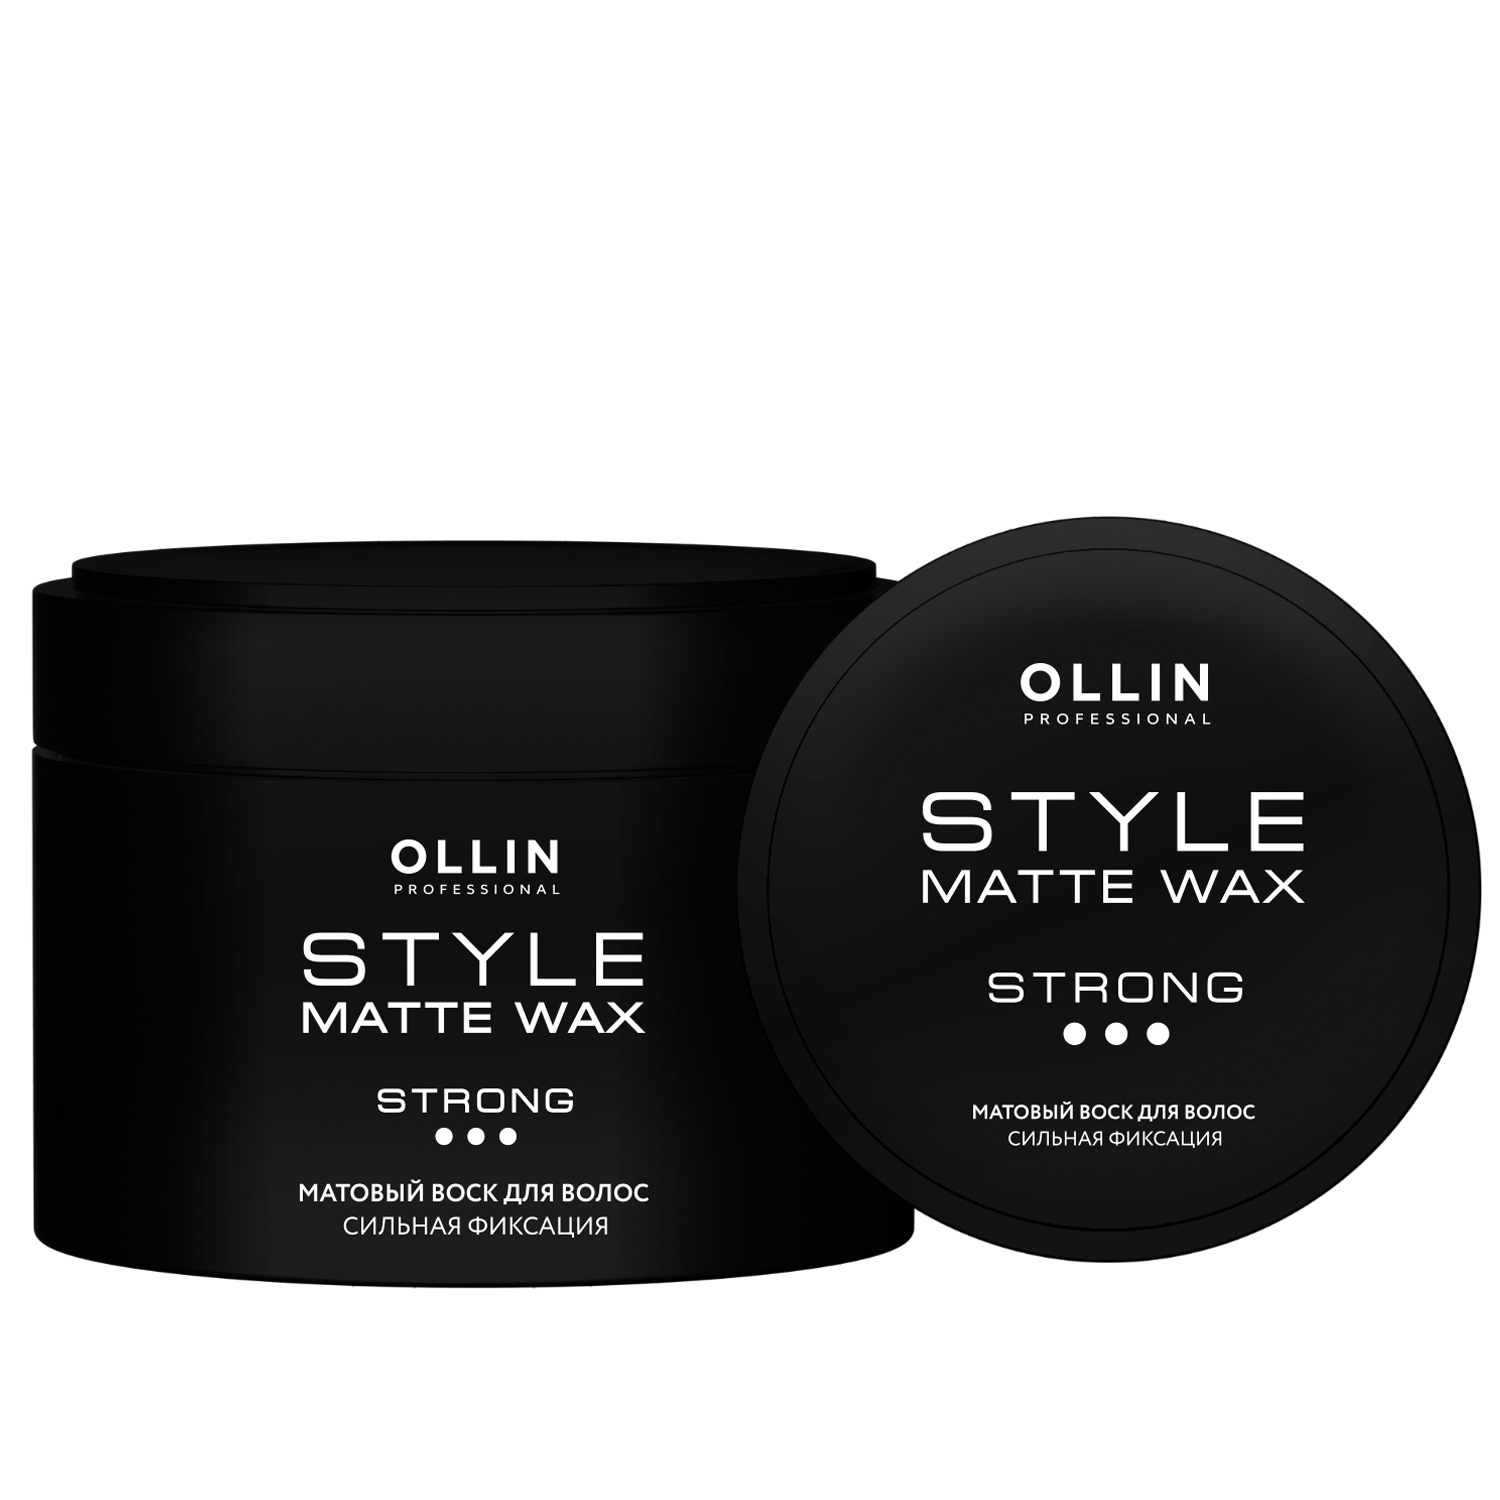 Ollin Professional Матовый воск для волос сильной фиксации, 50 г (Ollin Professional, Style)